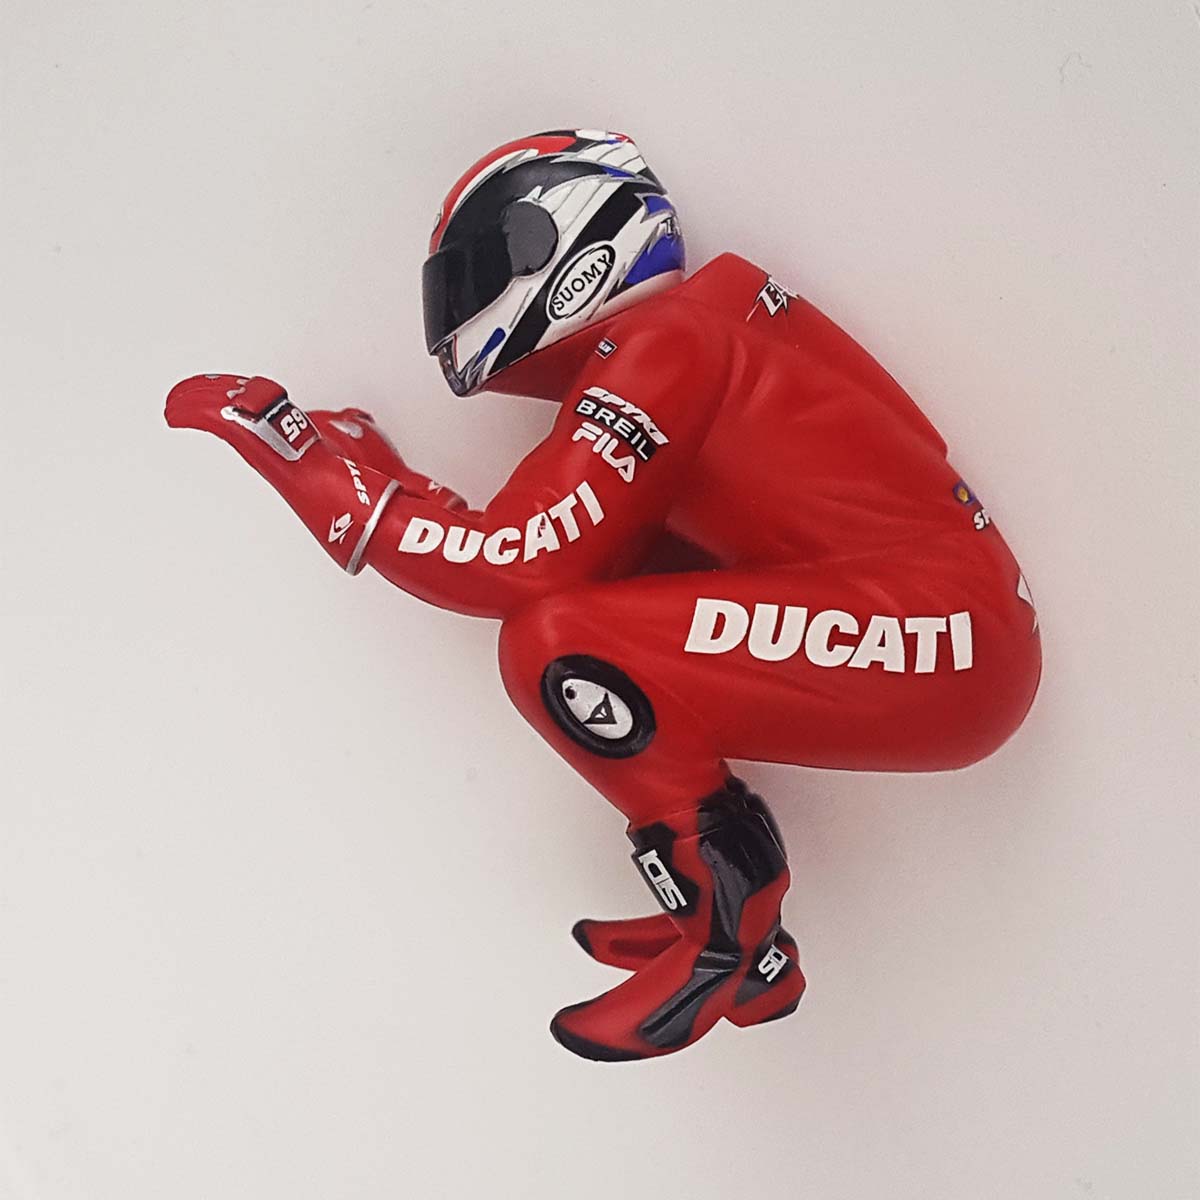 Scalextric Motorbike MotoGP Figure - Red Ducati GP "Capirossi" For C6008